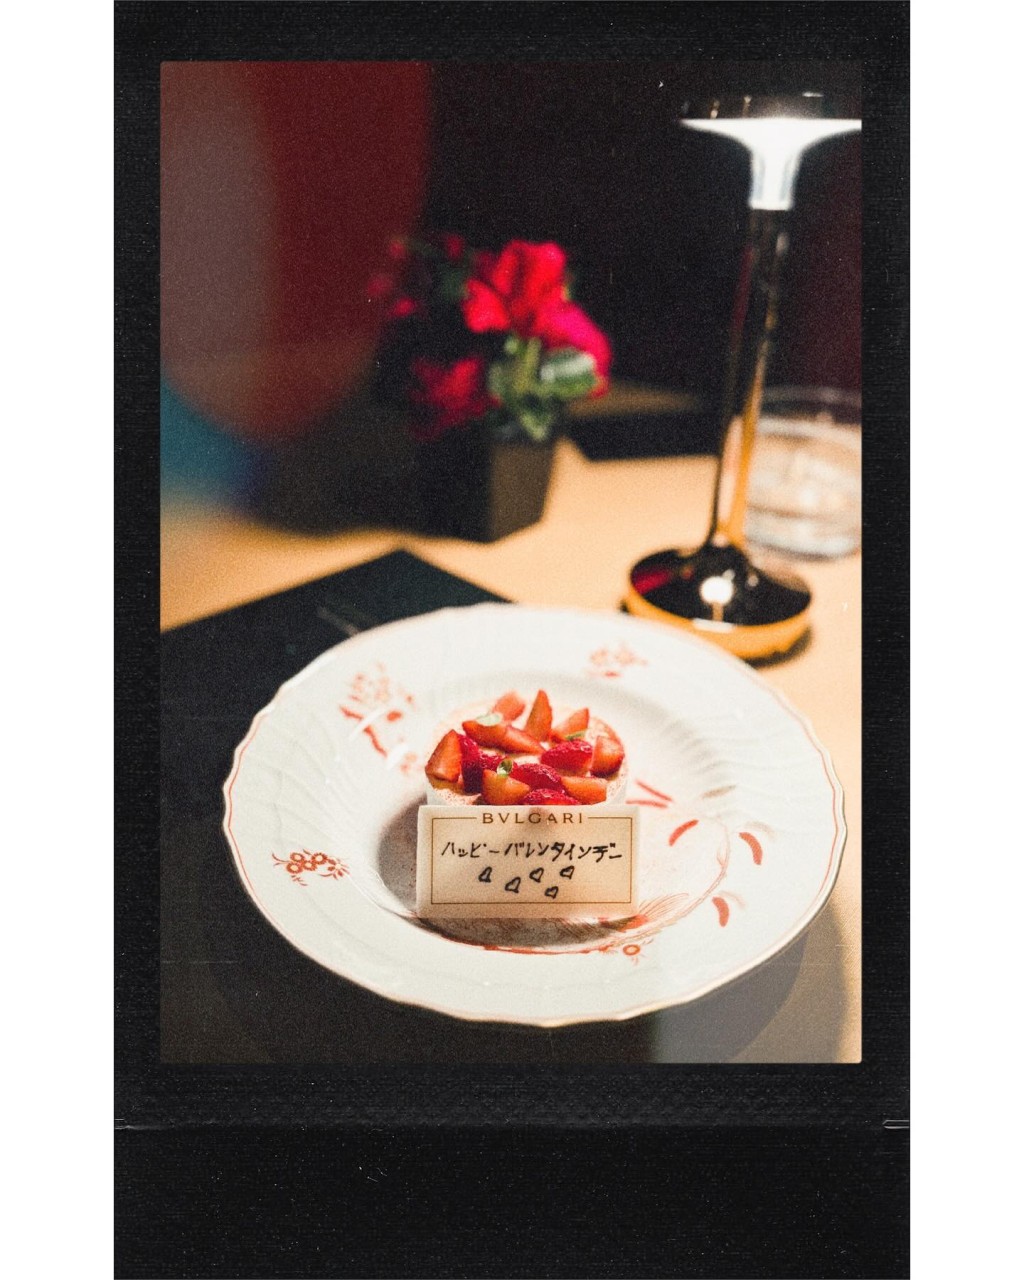 其中一件甜品更用日文写上「情人节快乐」，可见照片是早前蒋家旻在日本欢度情人节时拍下的。